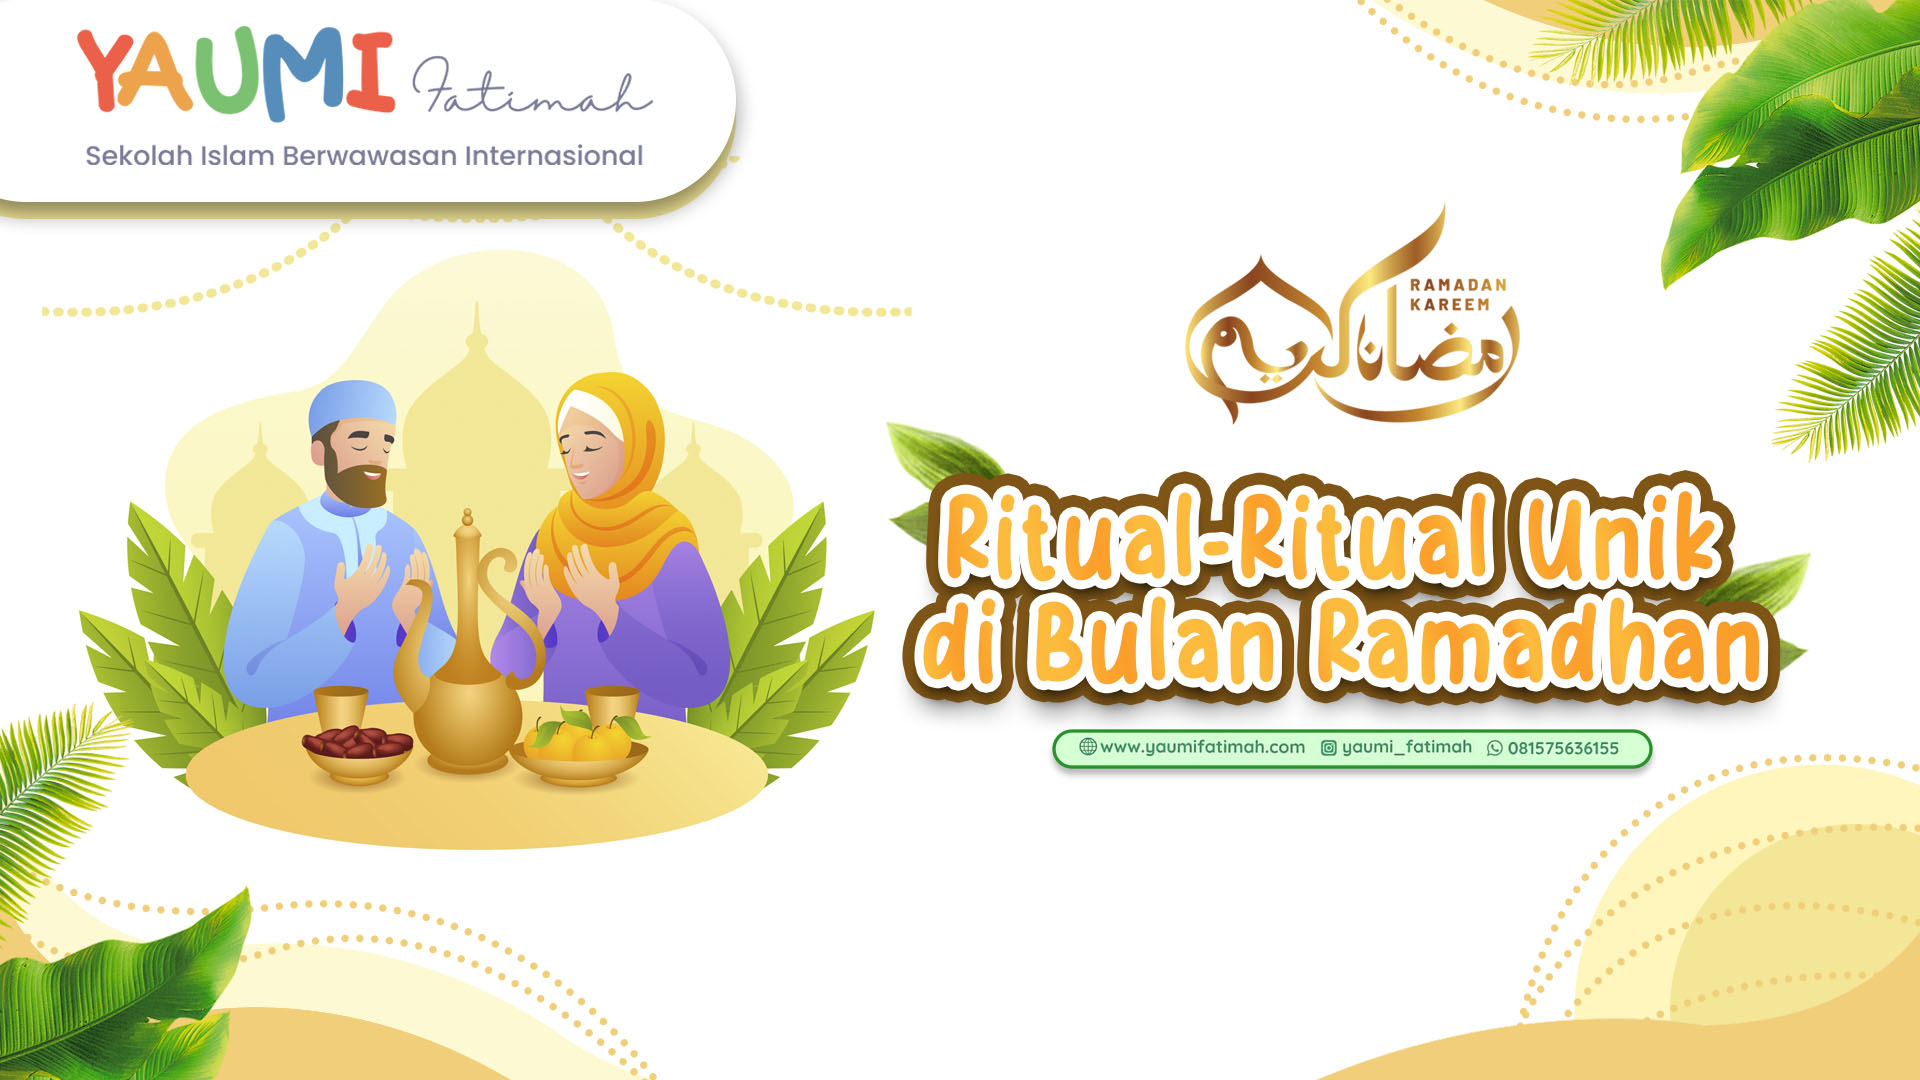 ritual dibulan ramadhan